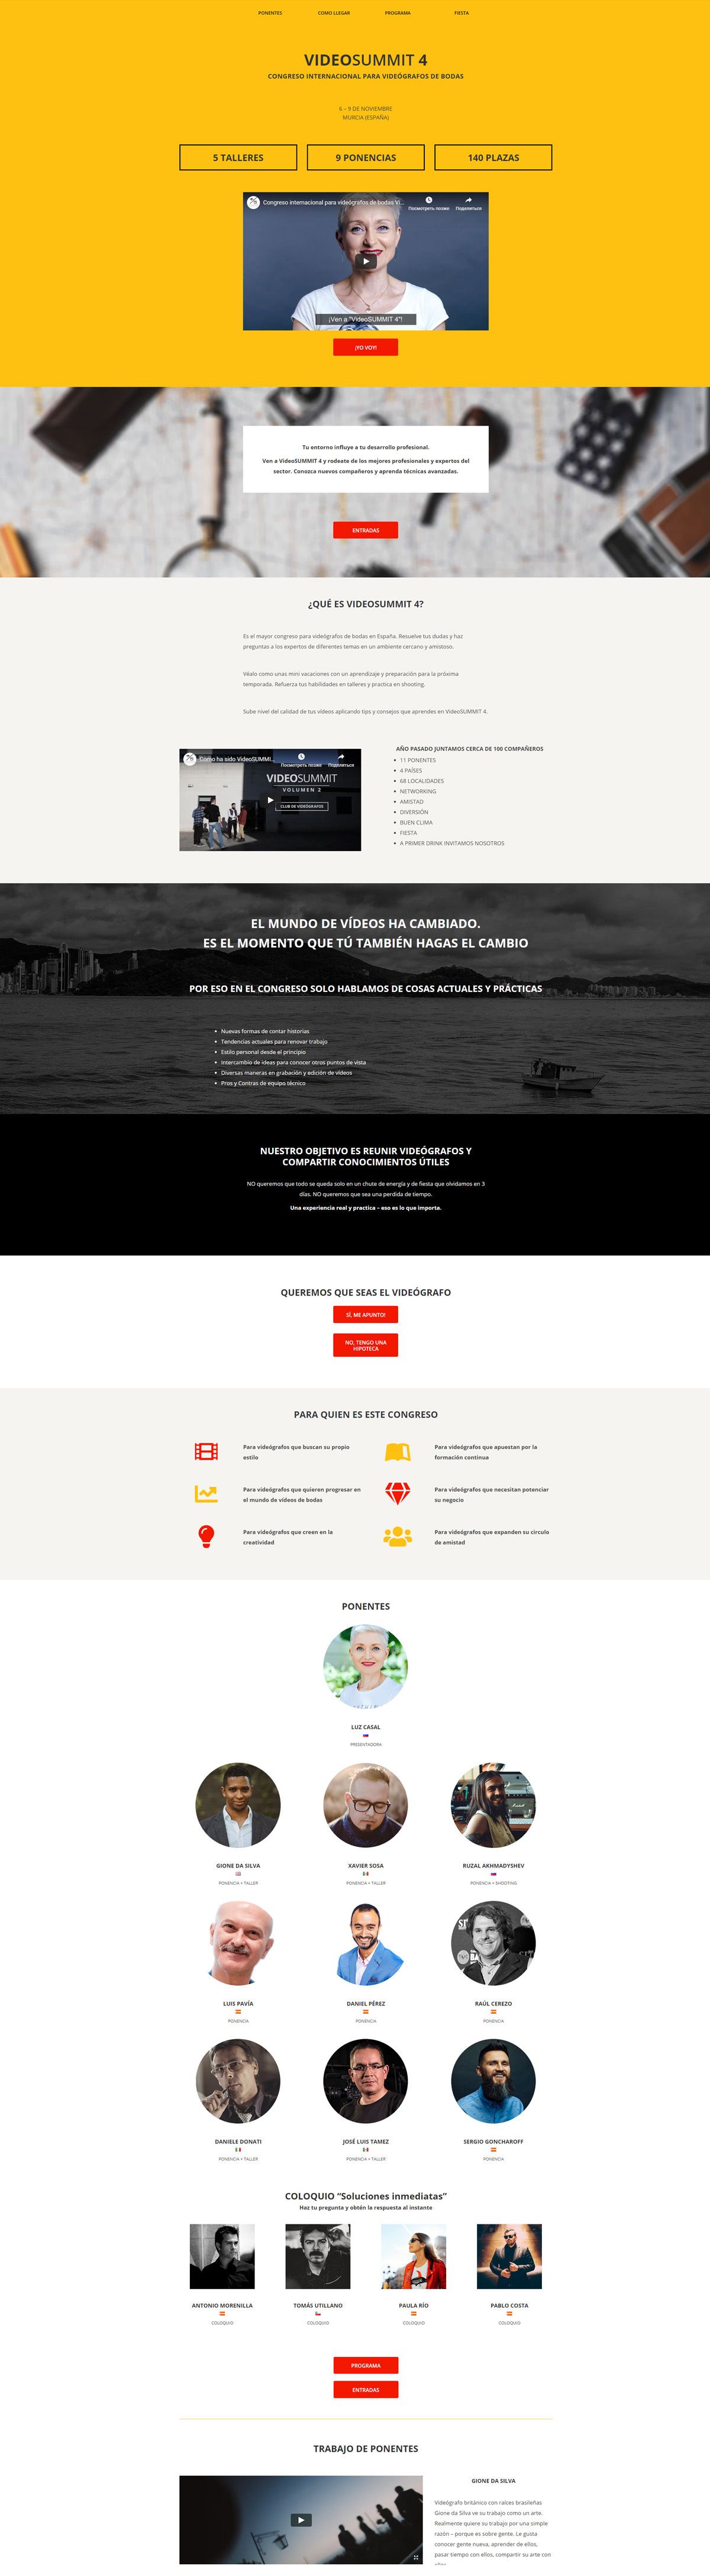 Diseño de paginas web. Pagina de aterrizaje